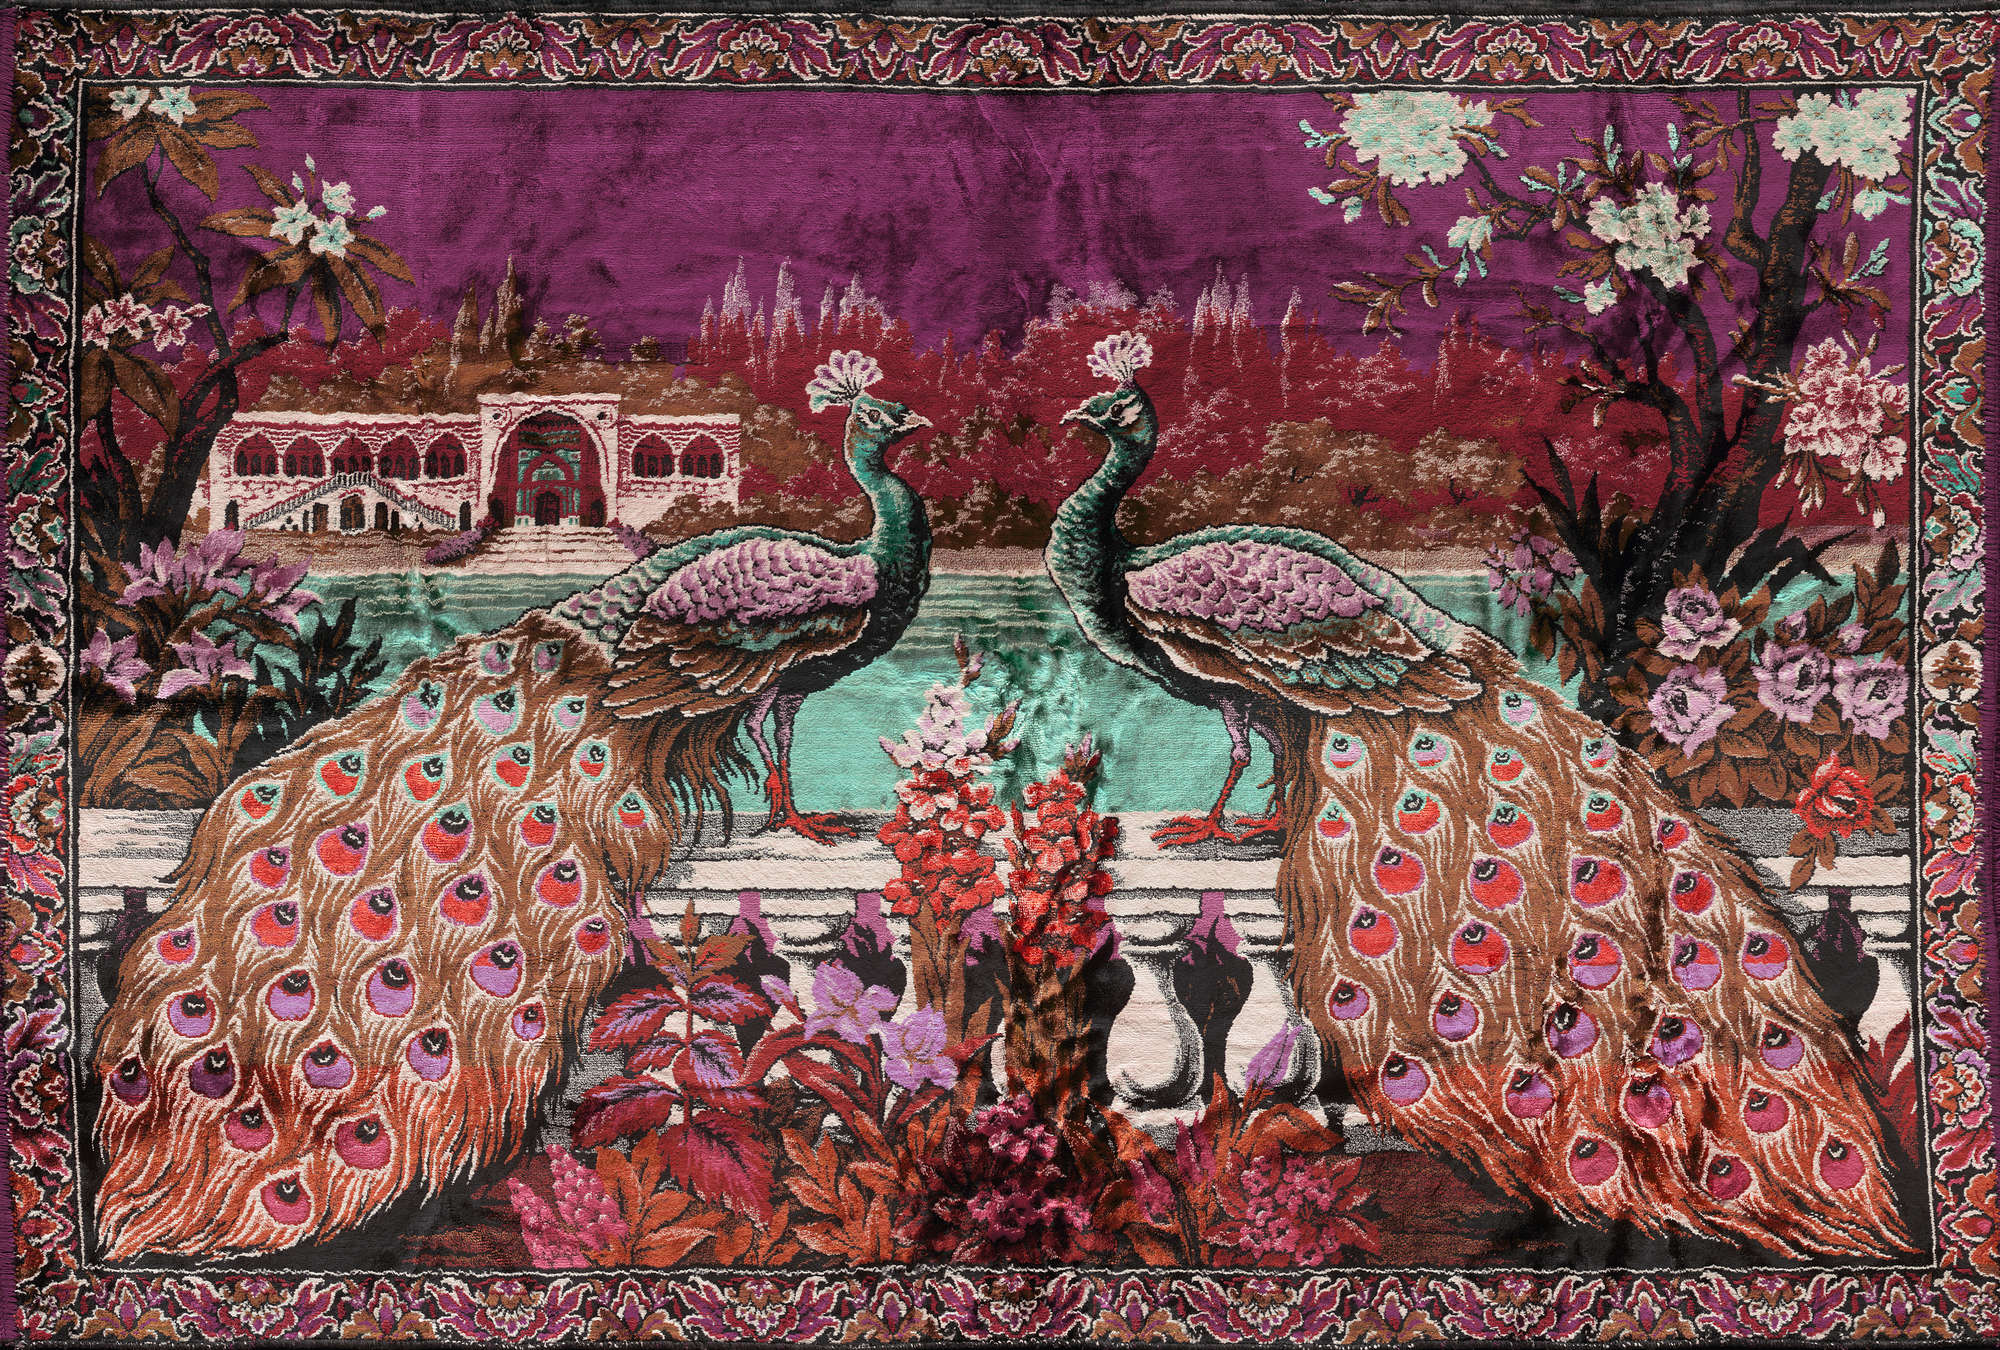             Papier peint décor Inde, paon exotique - violet, bleu, rose
        